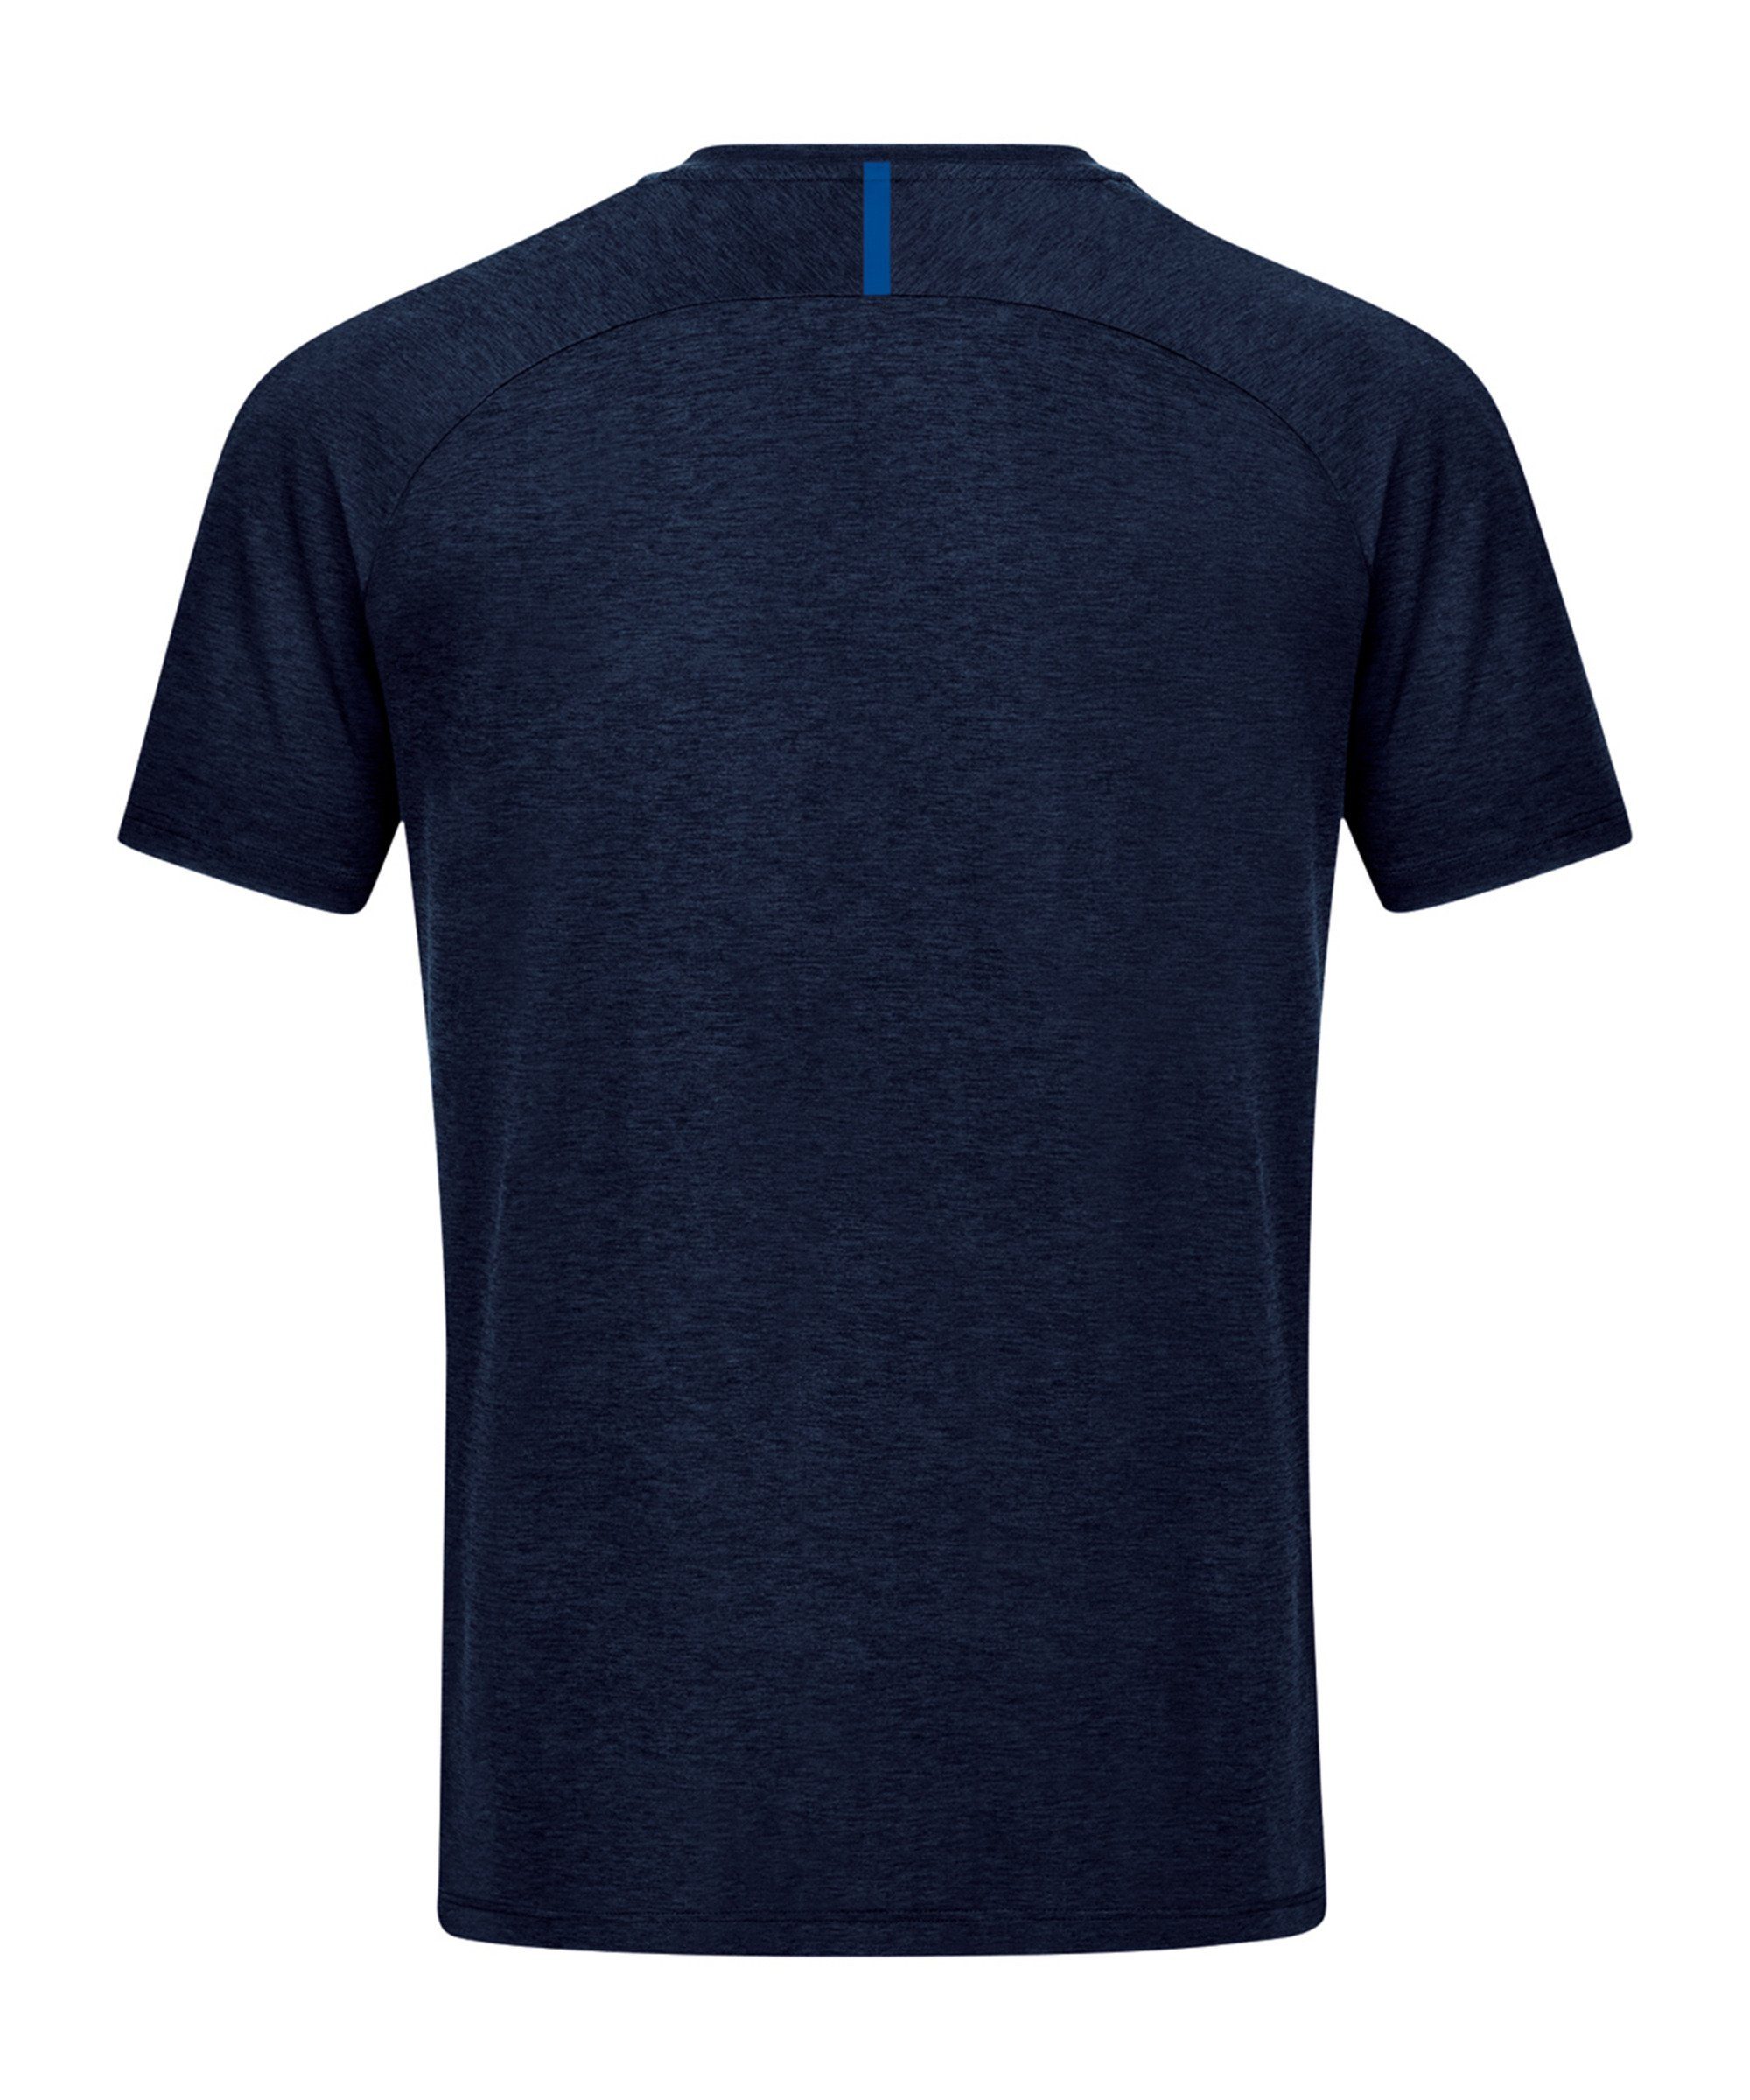 blaublau Freizeit Jako Challenge T-Shirt T-Shirt default